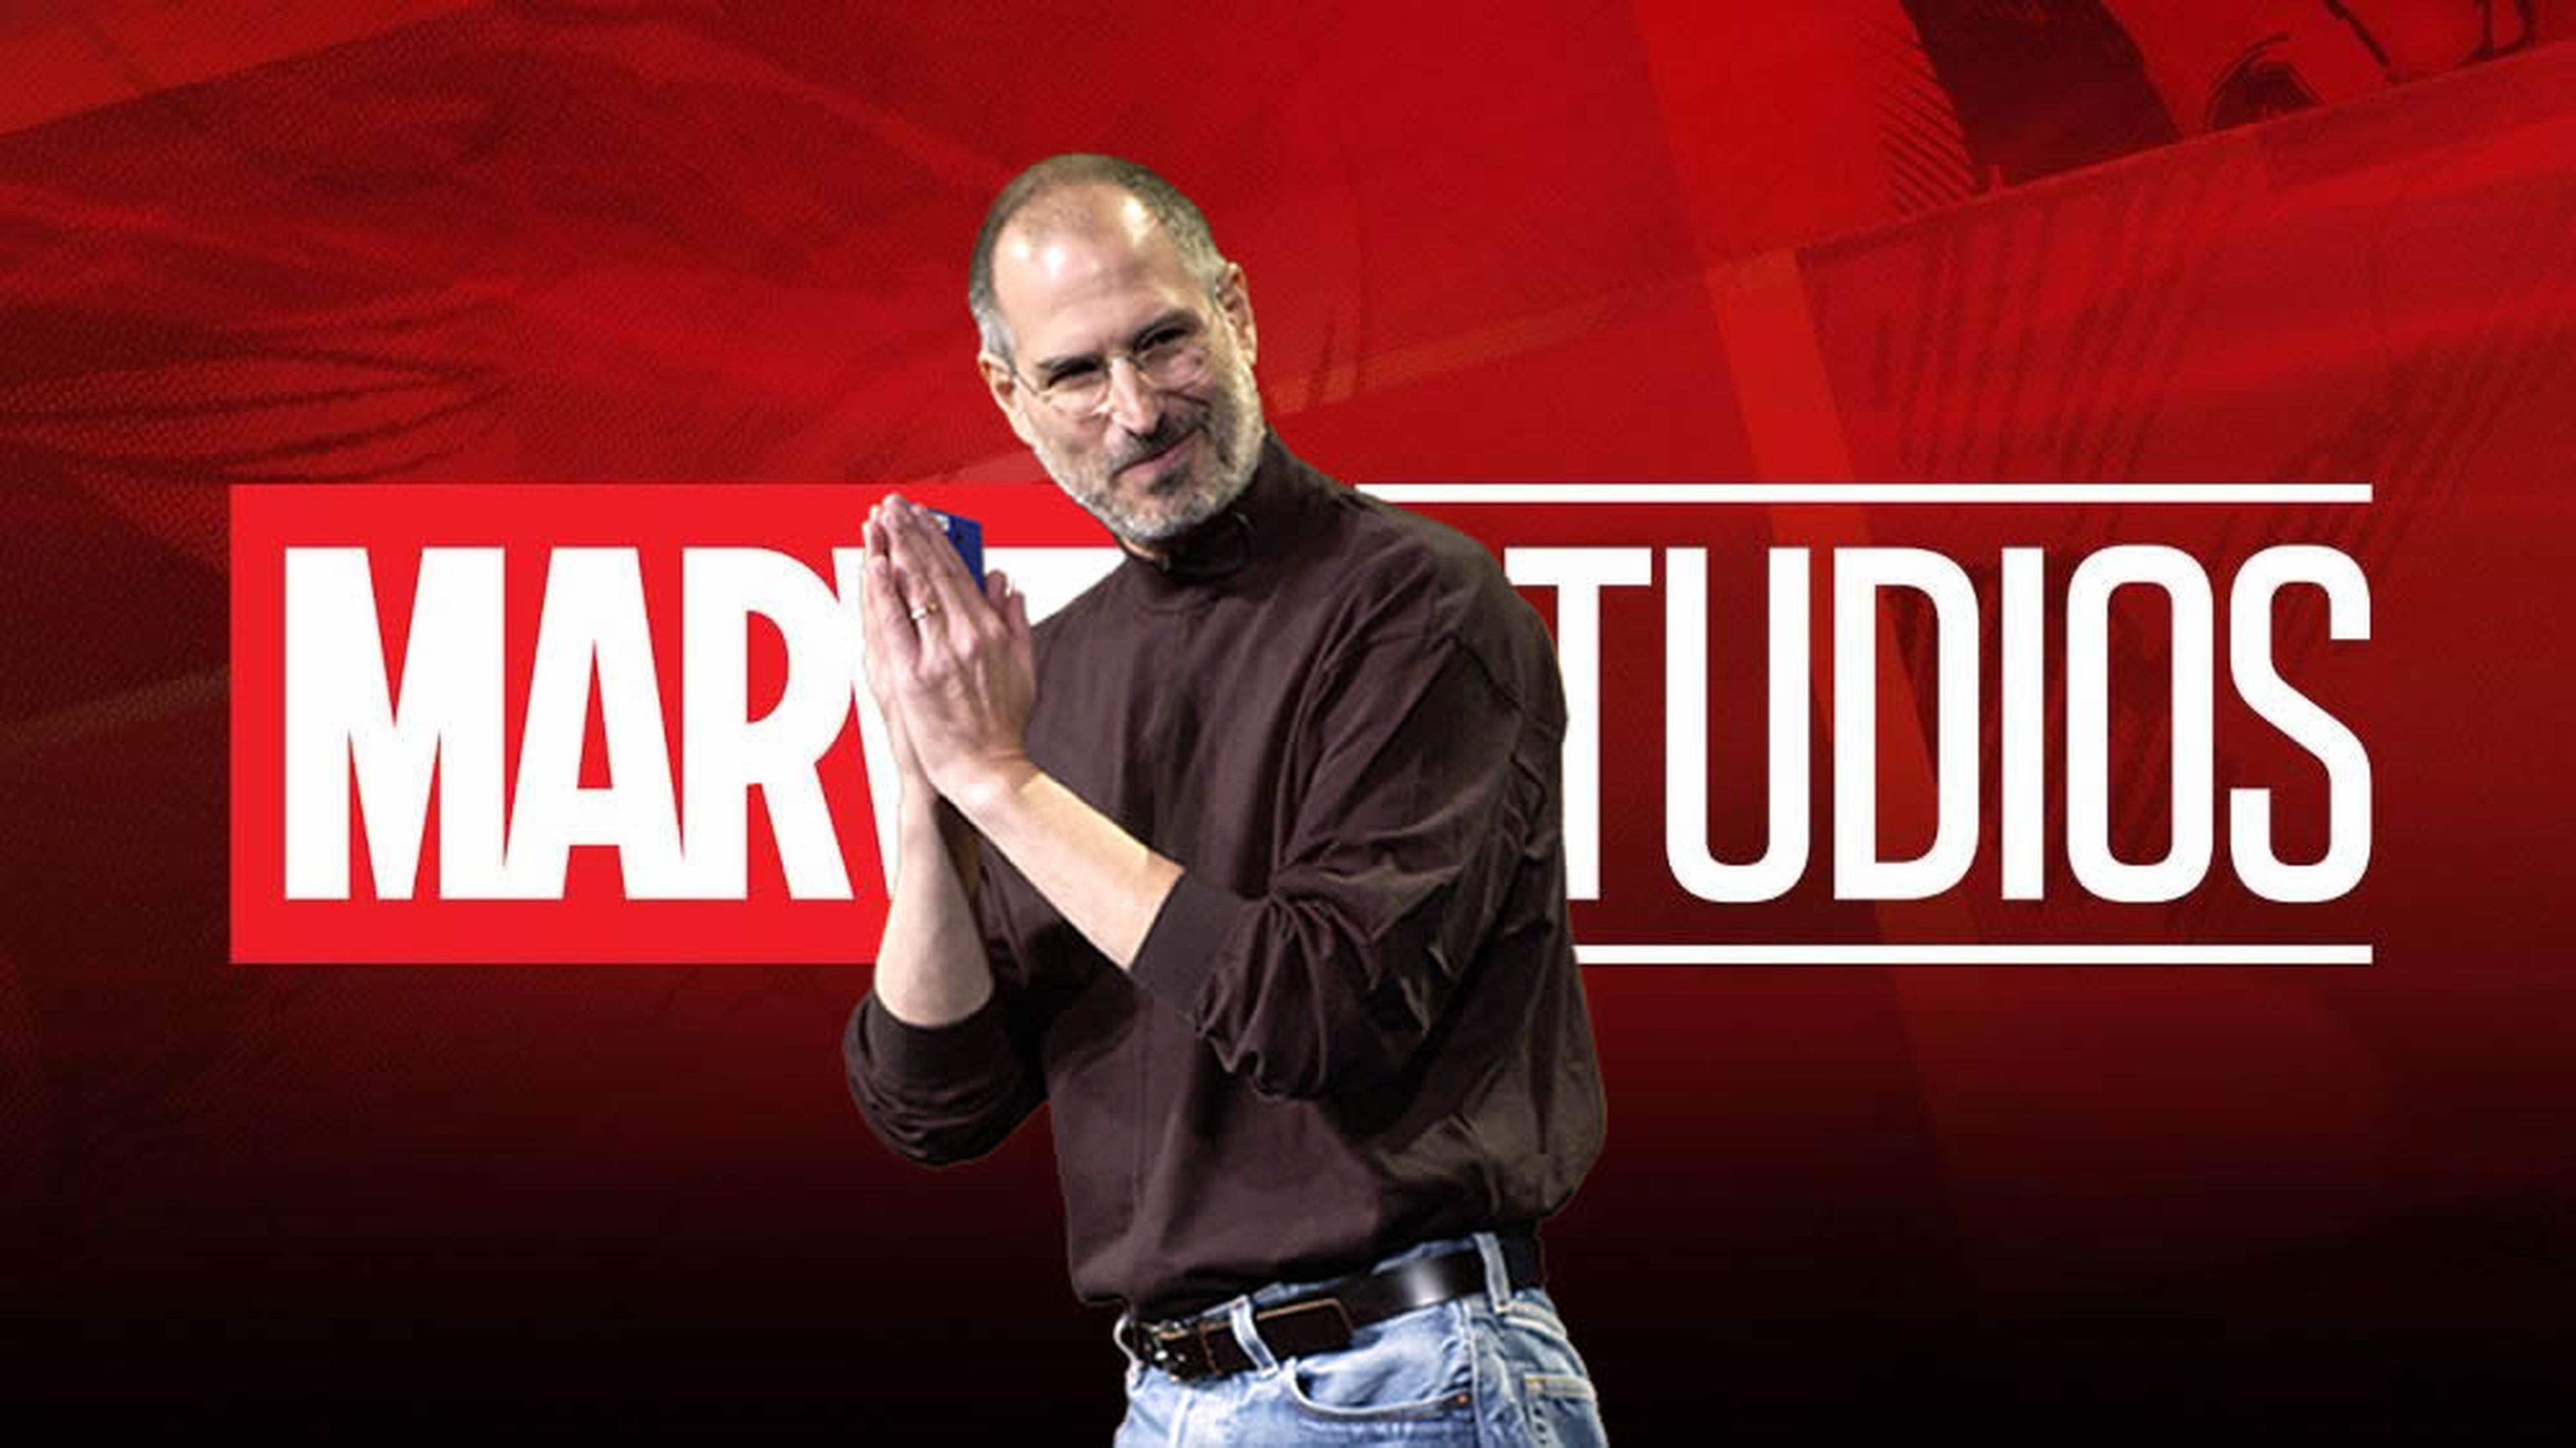 Steve Jobs Marvel